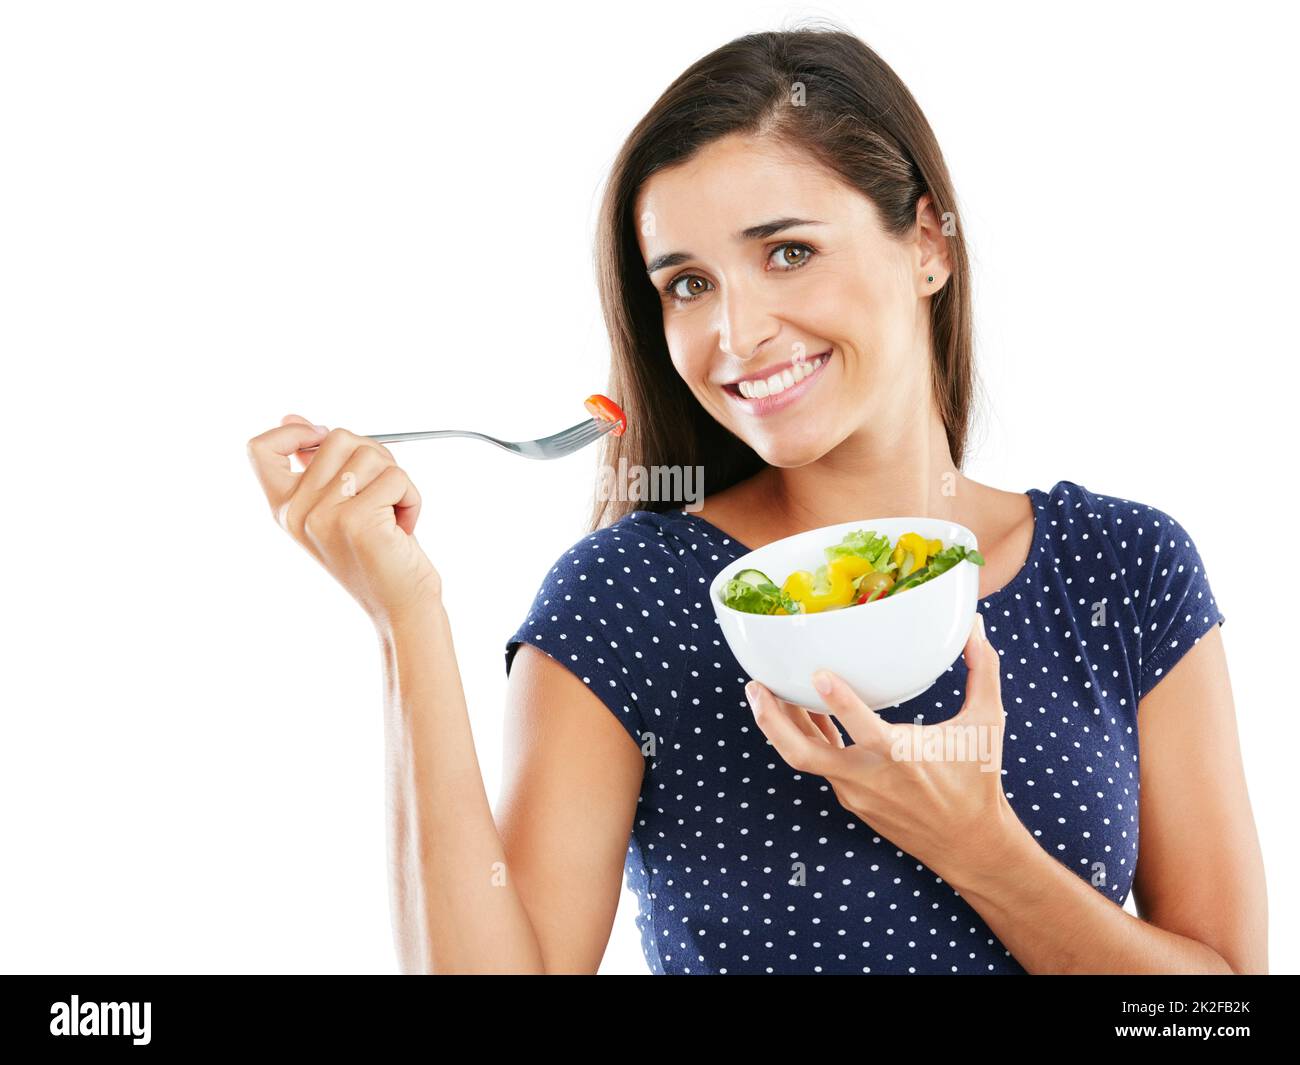 Mangez sainement, sentez-vous bien. Portrait en studio d'une jeune femme attrayante mangeant une salade saine sur fond blanc. Banque D'Images